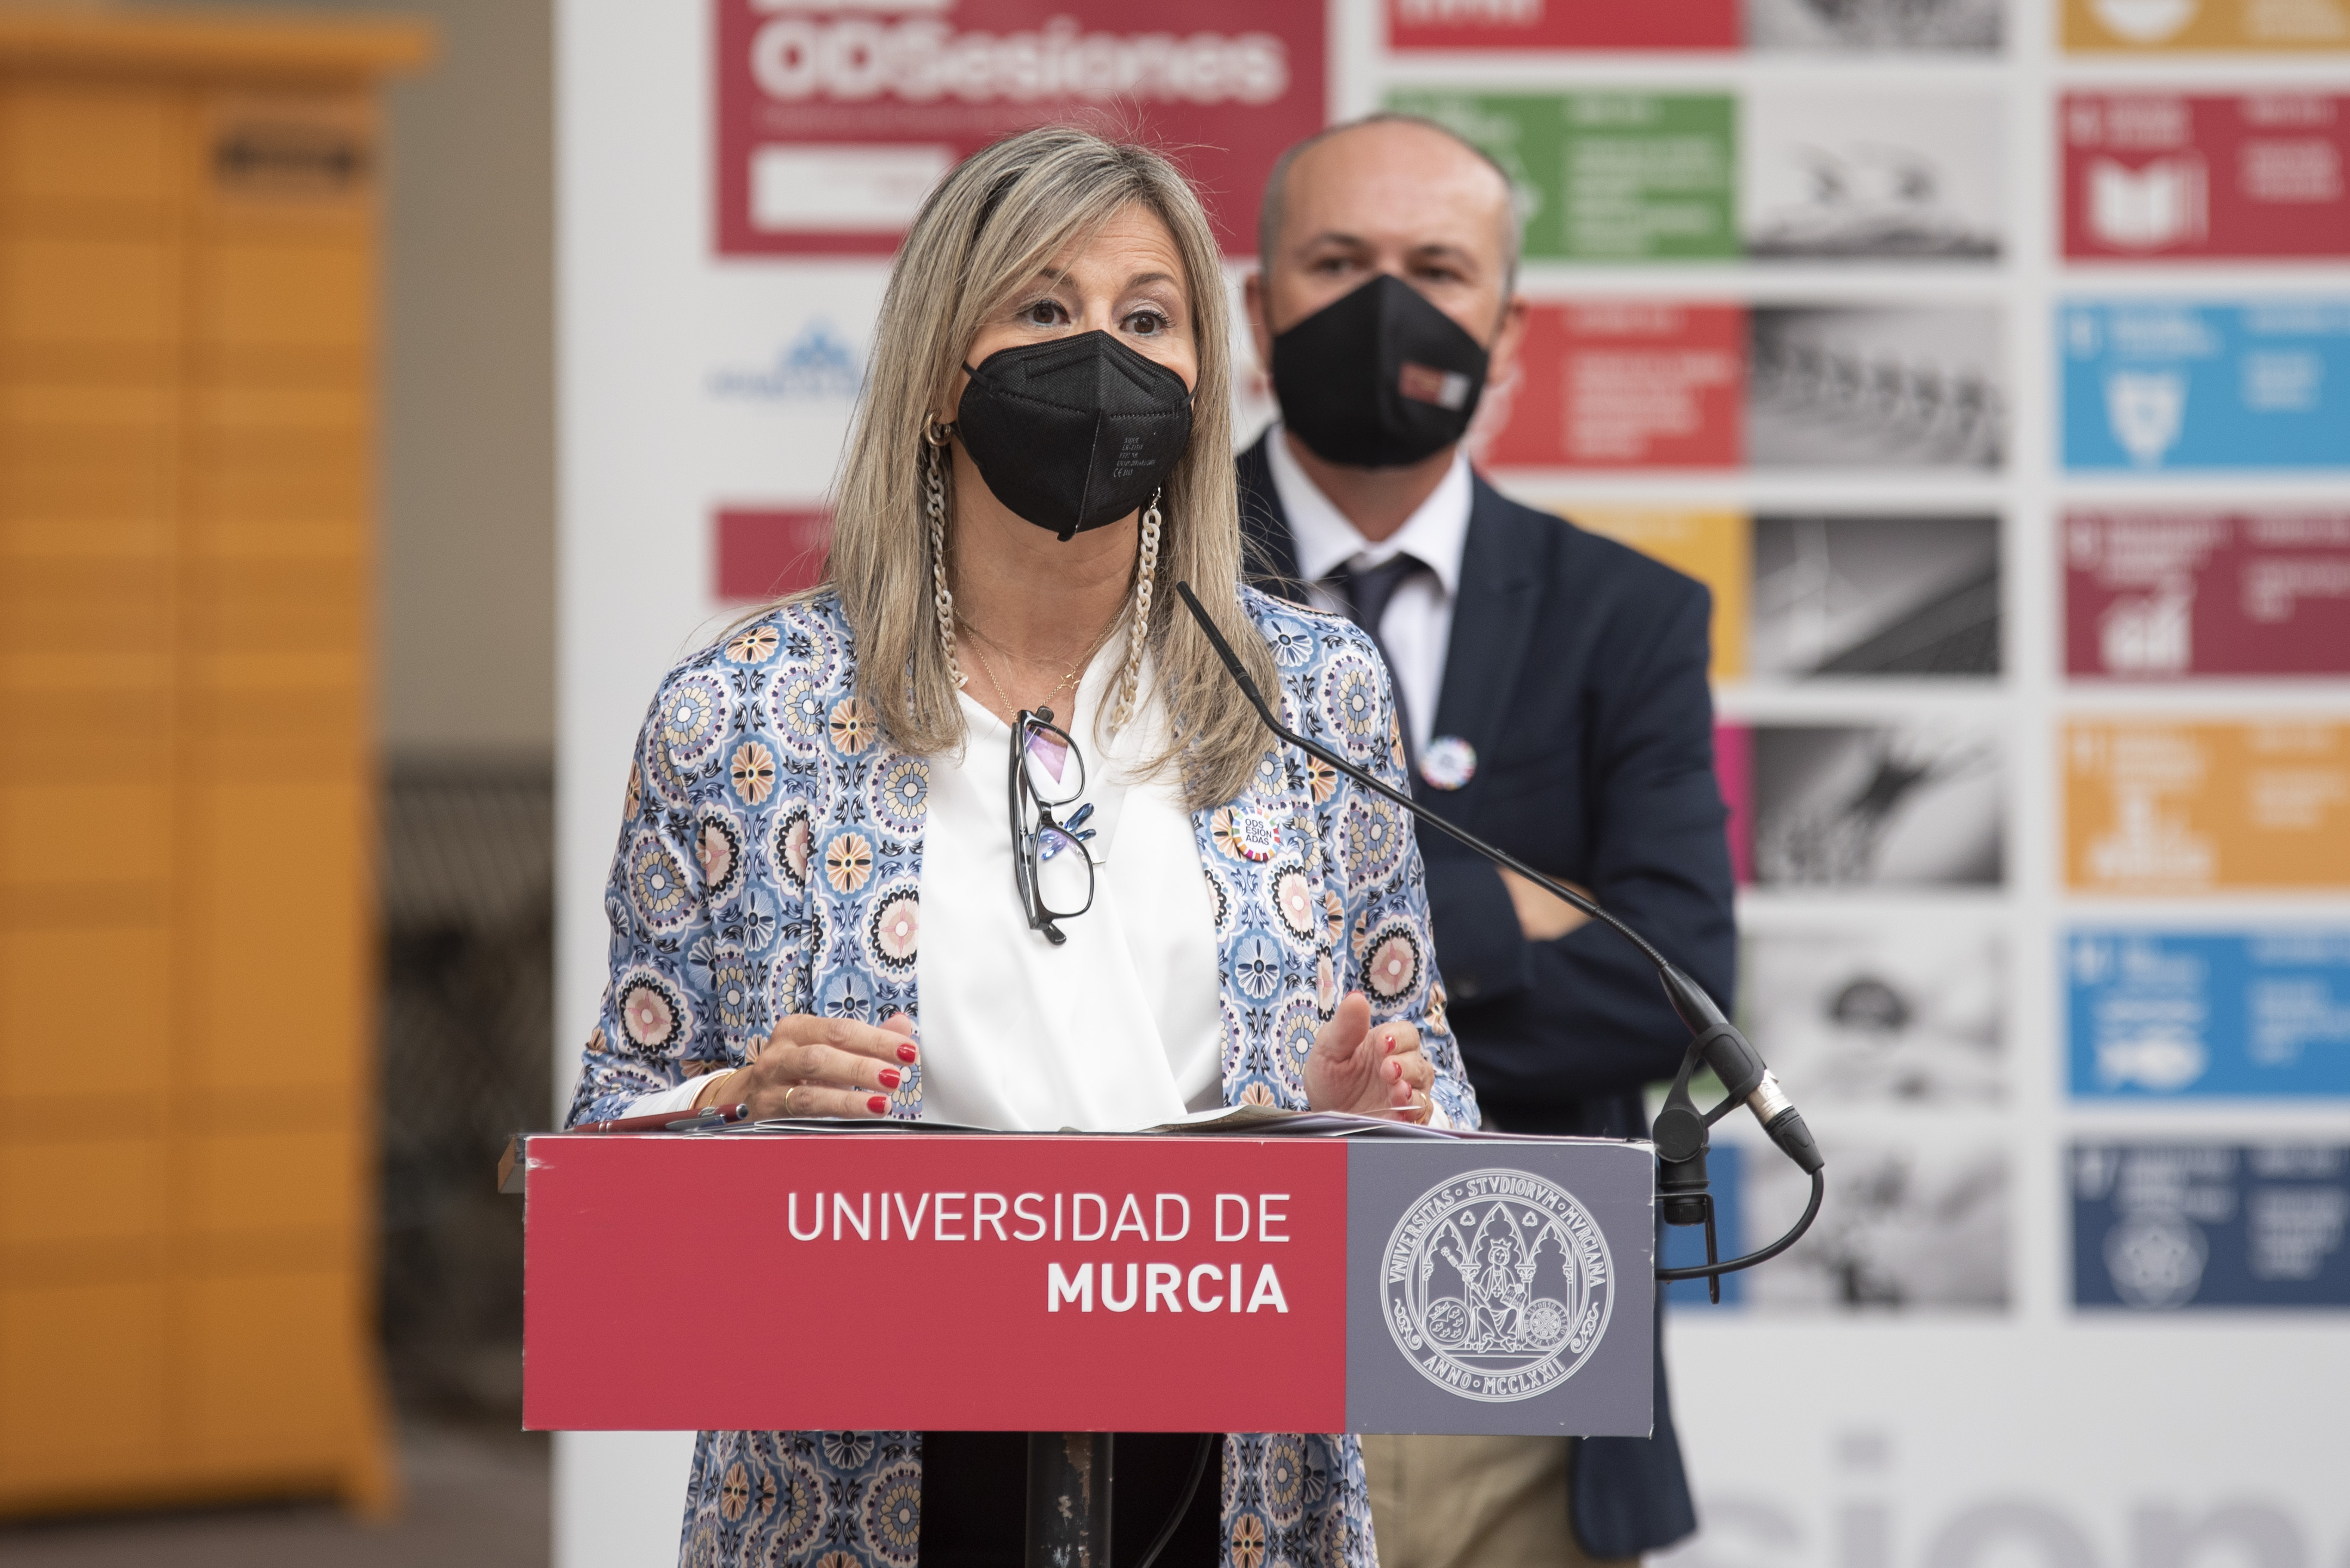 Olga García, directora territorial de CaixaBank participando en un evento de Odsesiones de la Universidad de Murcia